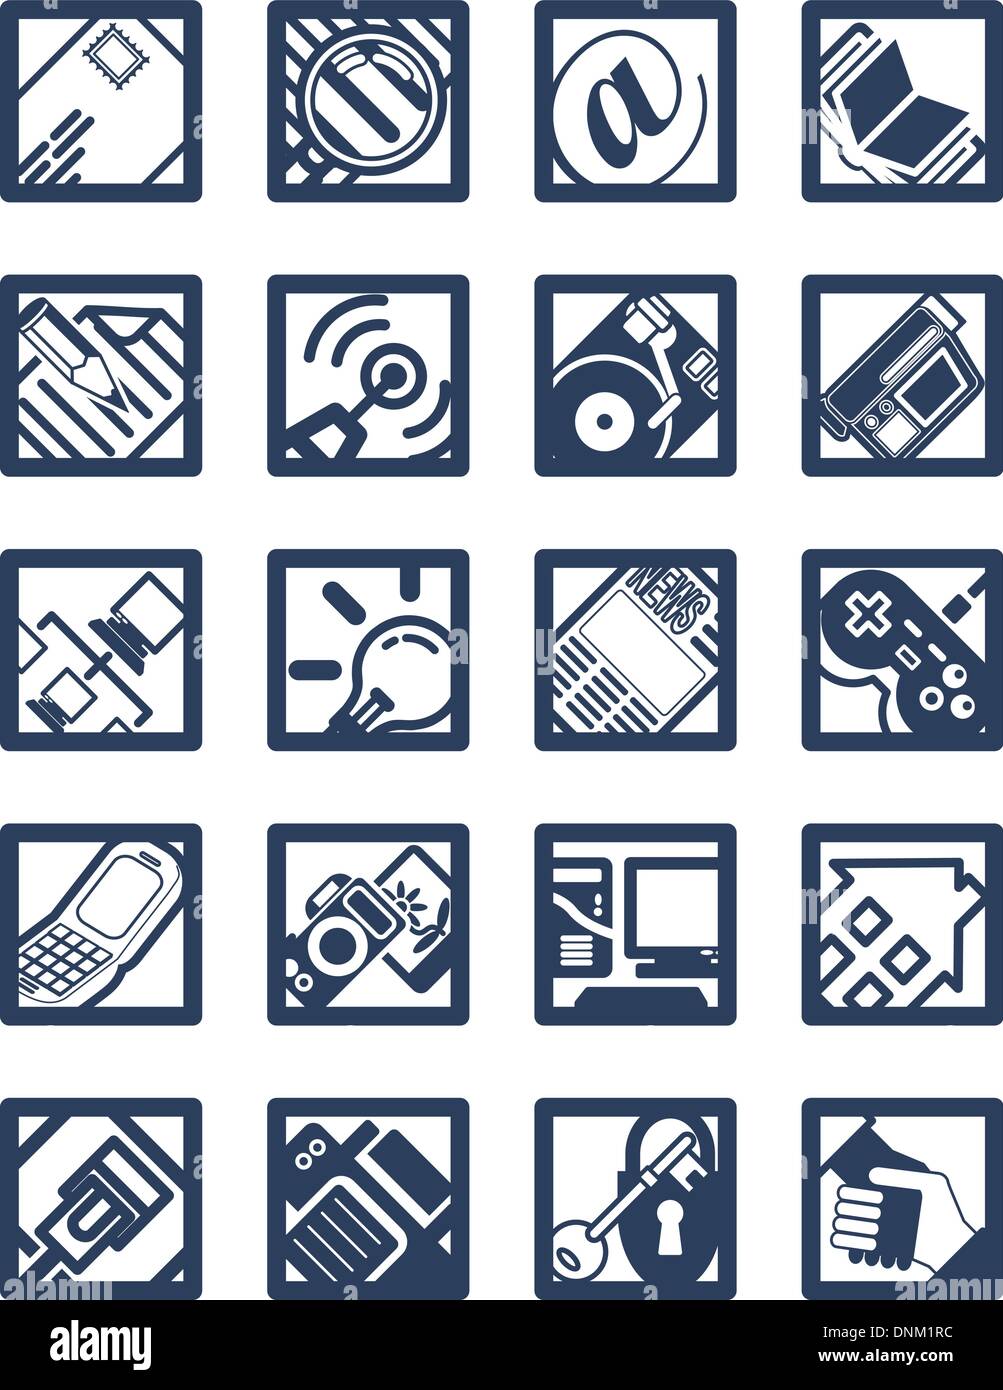 Square Internet Computing Icons Illustration de Vecteur